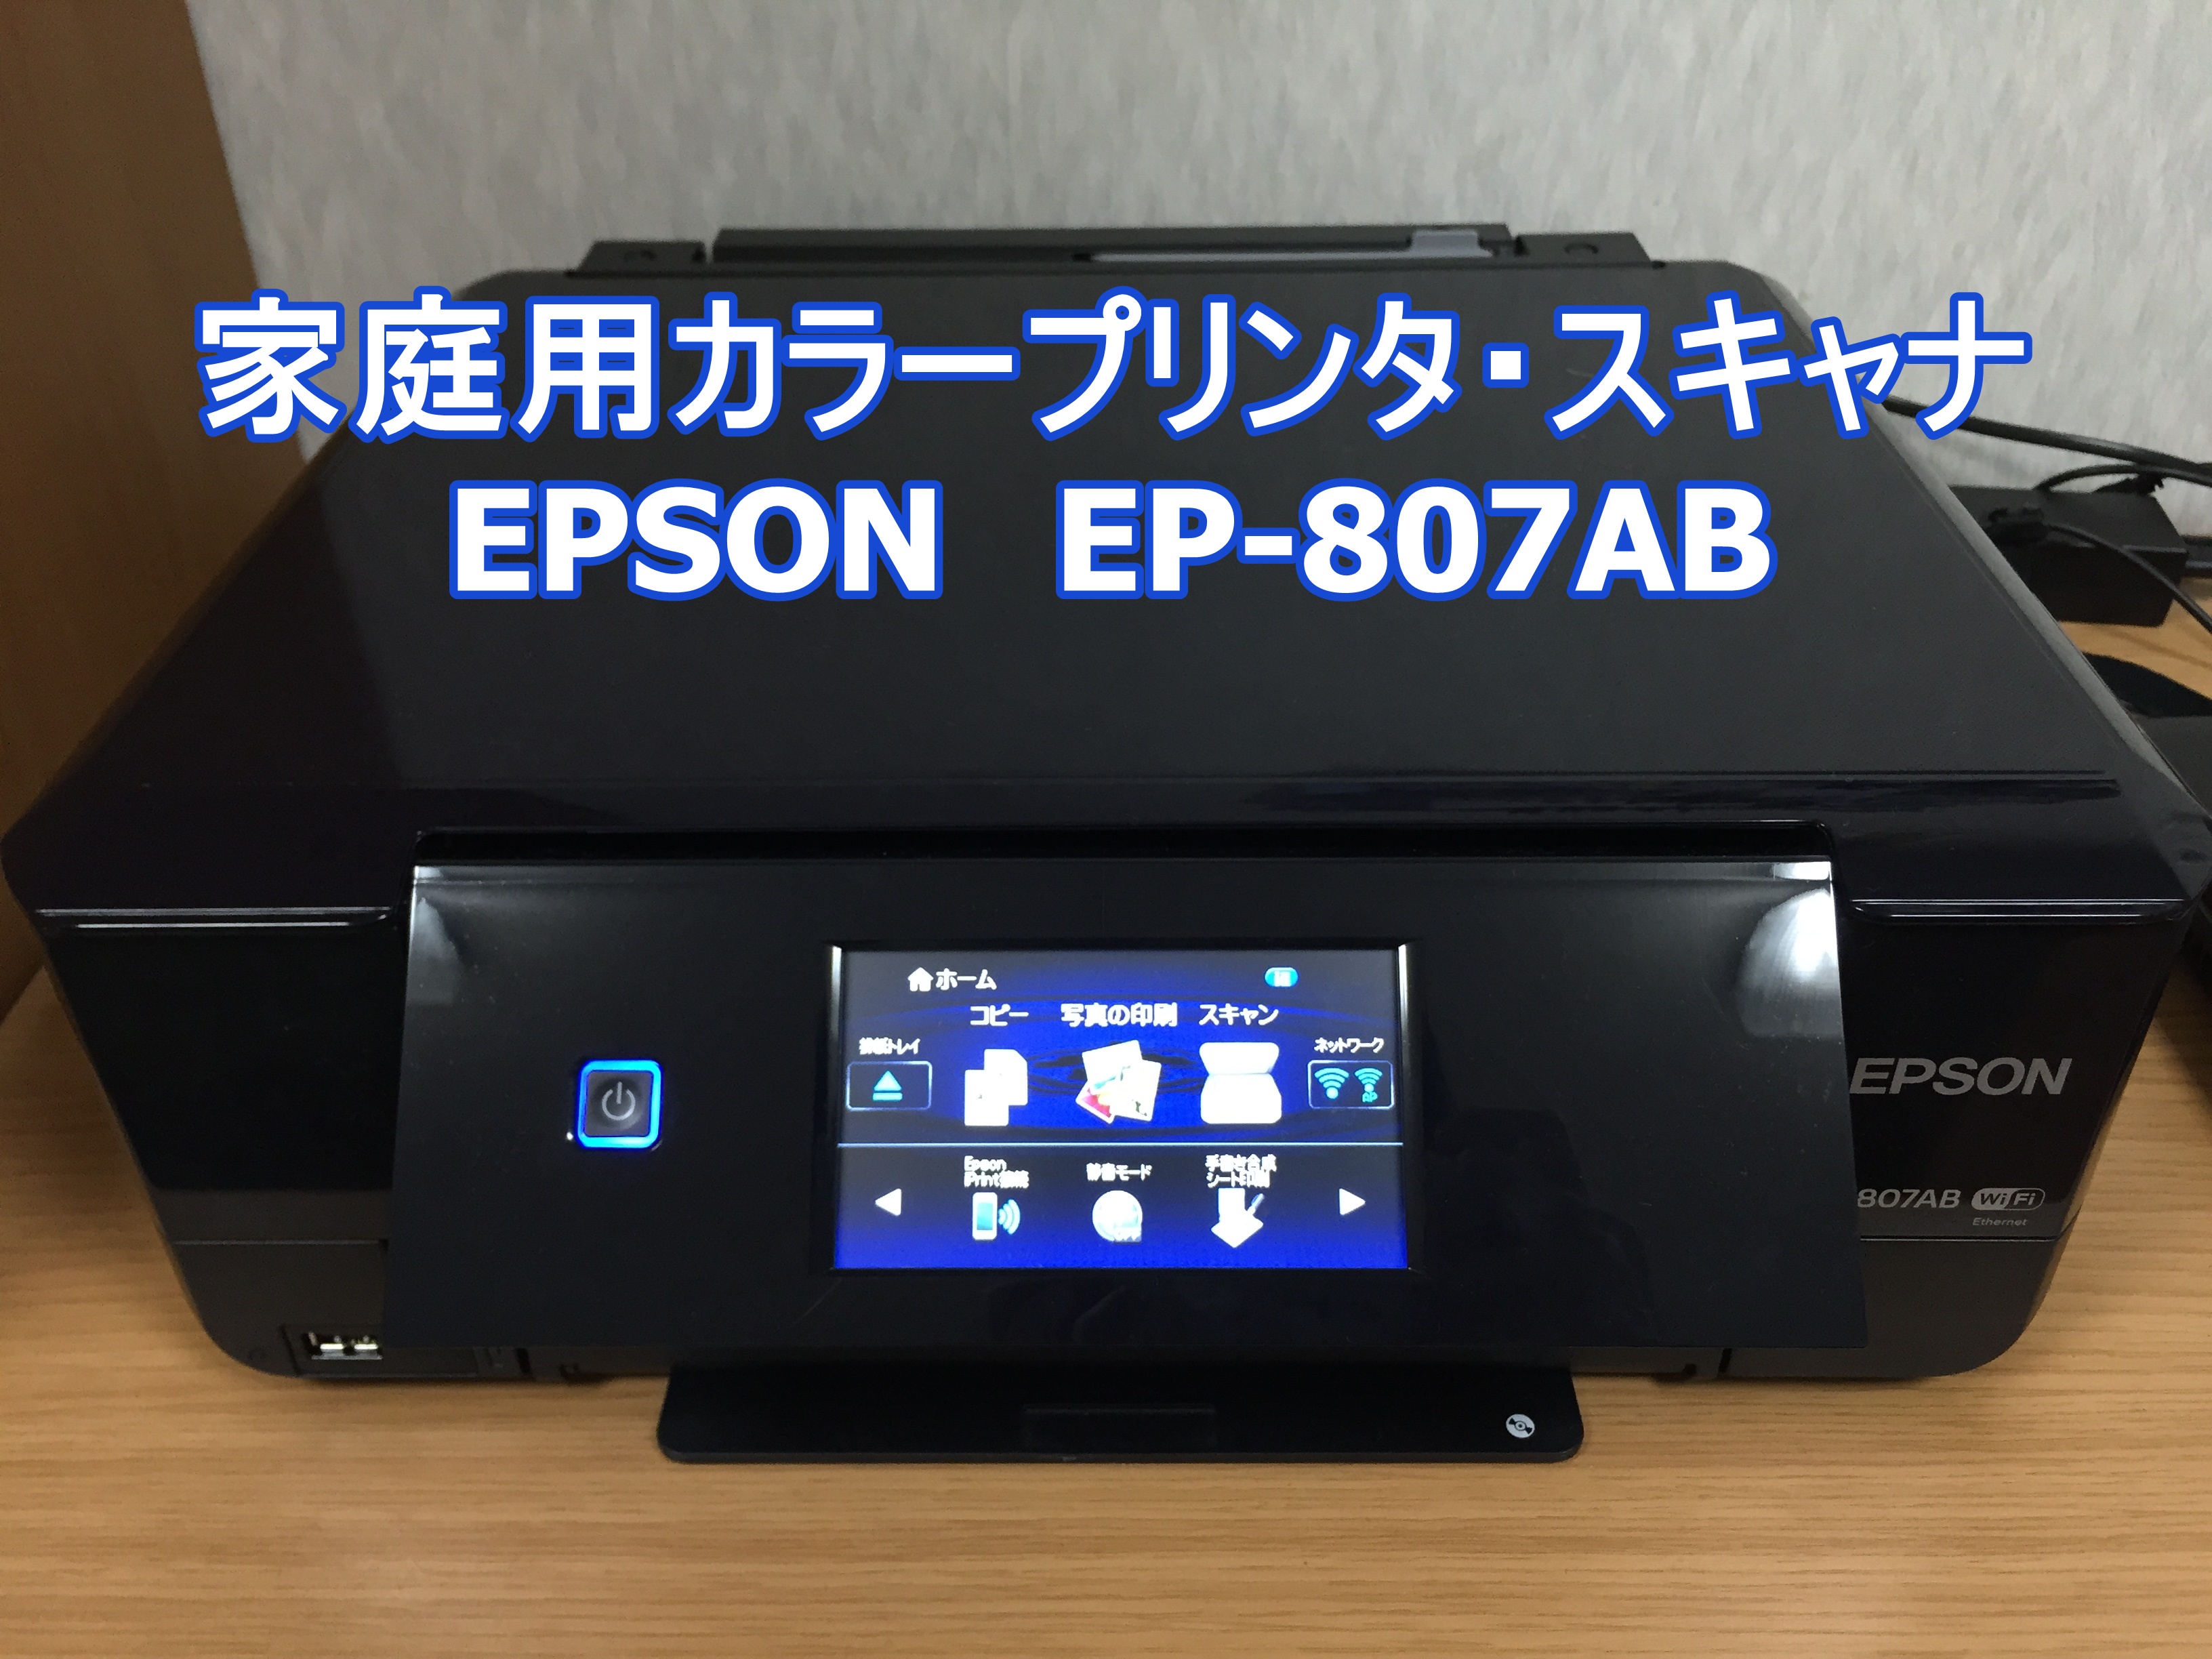 売れ筋商品 旧モデル エプソン インクジェット複合機 Colorio EP-806AB 無線 有線 スマートフォンプリント Wi-Fi Direct  ブ